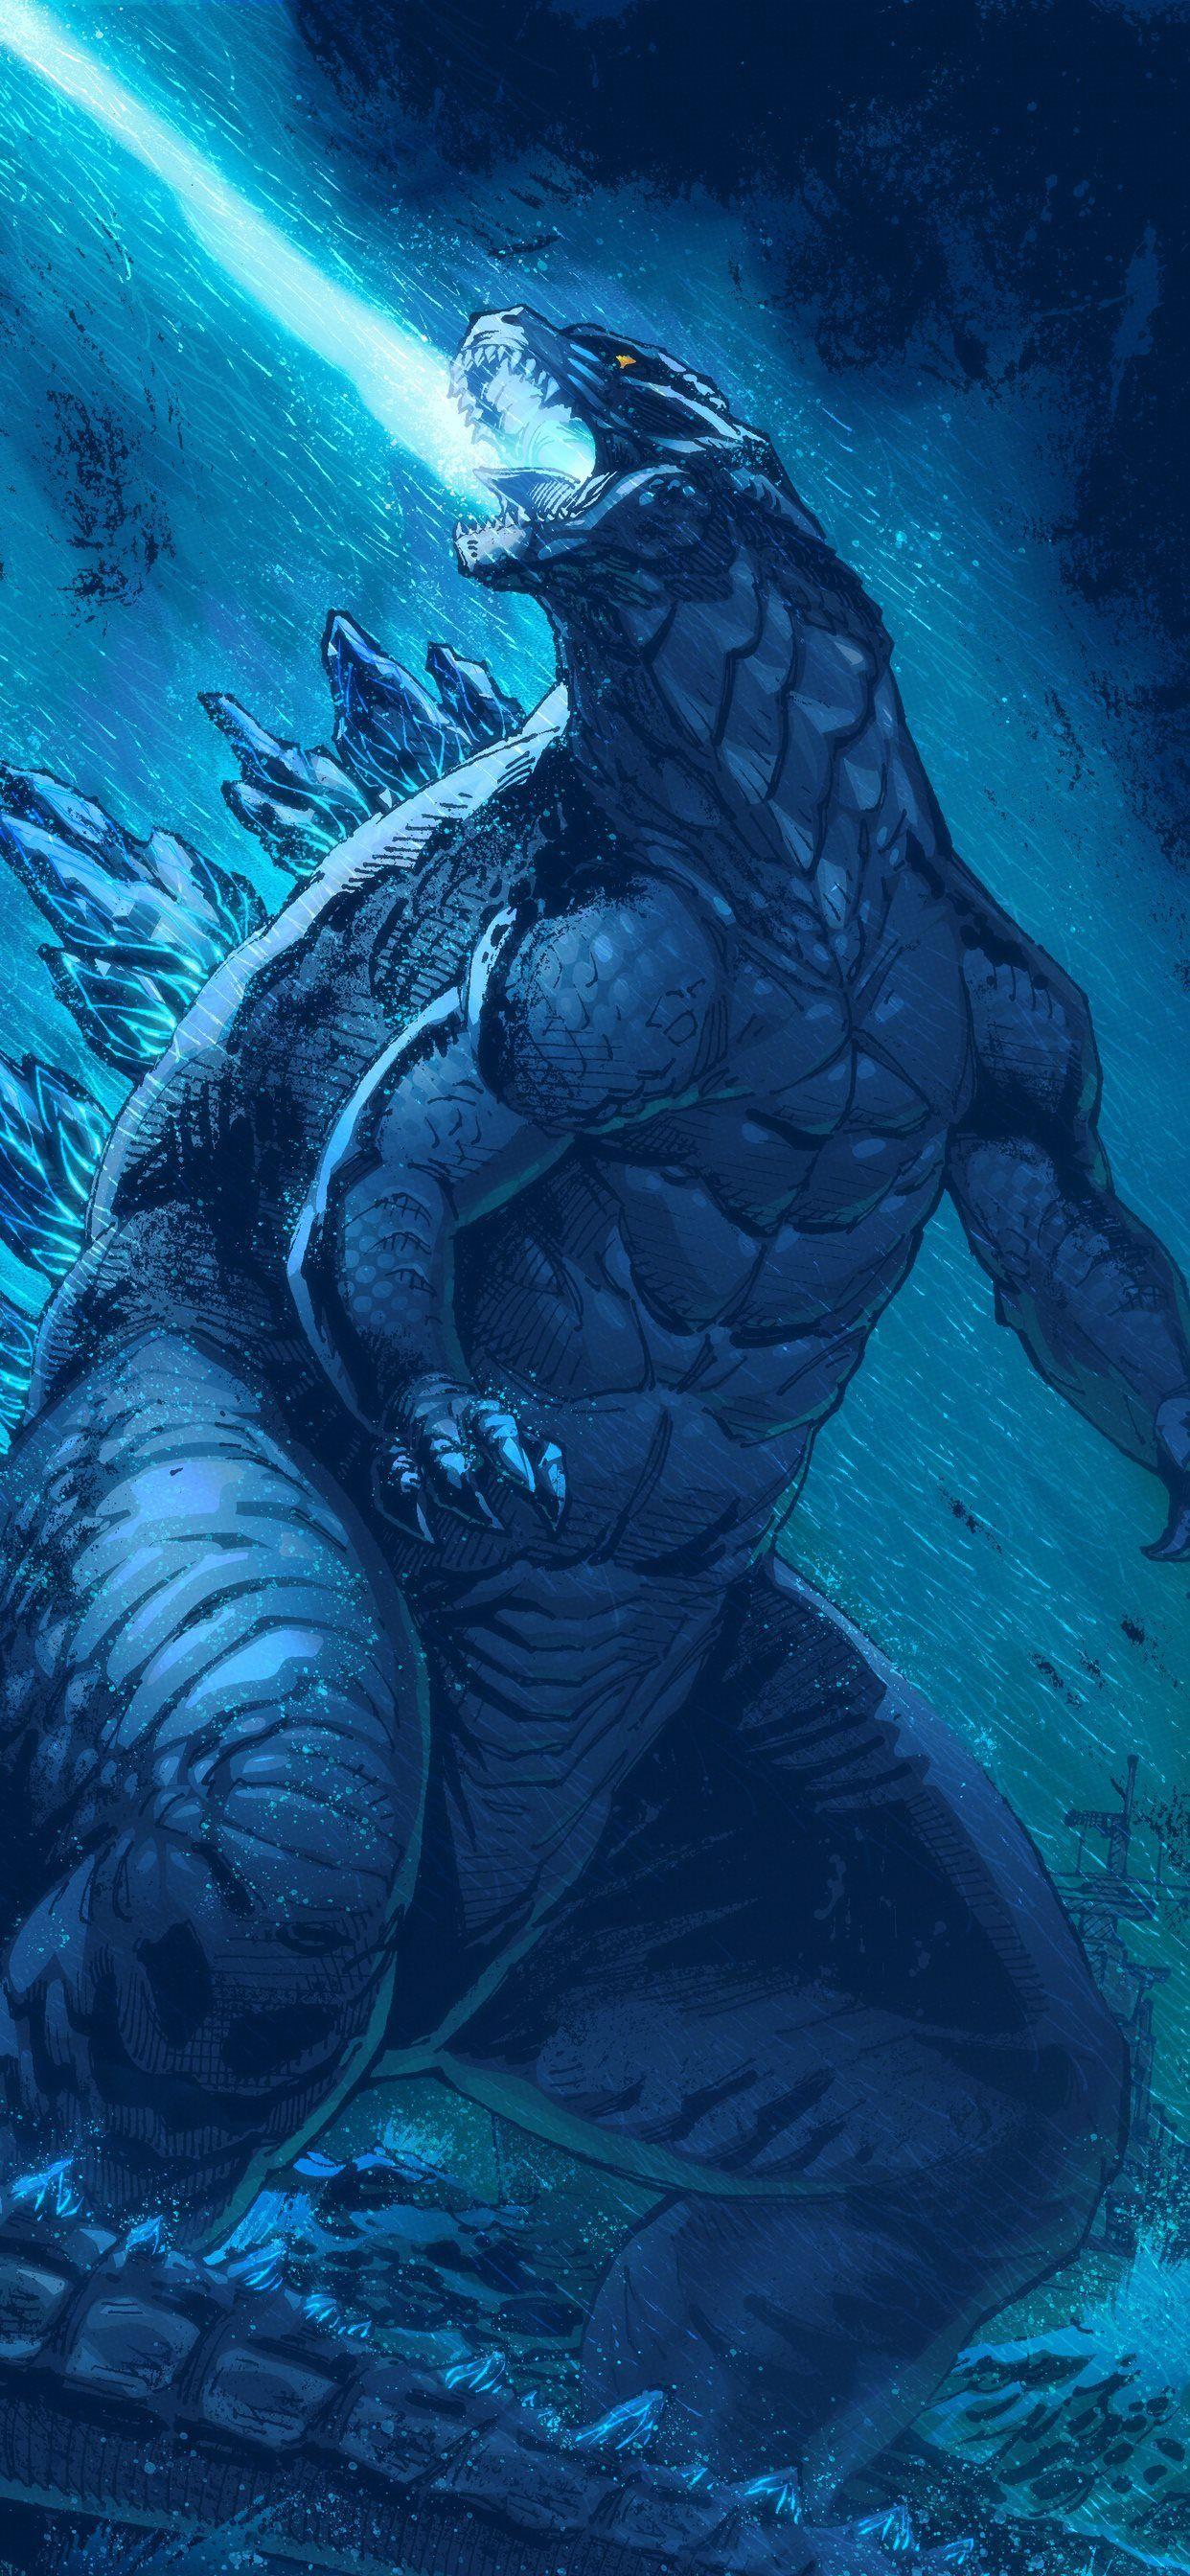 1242x2688 tác phẩm nghệ thuật Godzilla vua của quái vật Hình nền iPhone X miễn phí